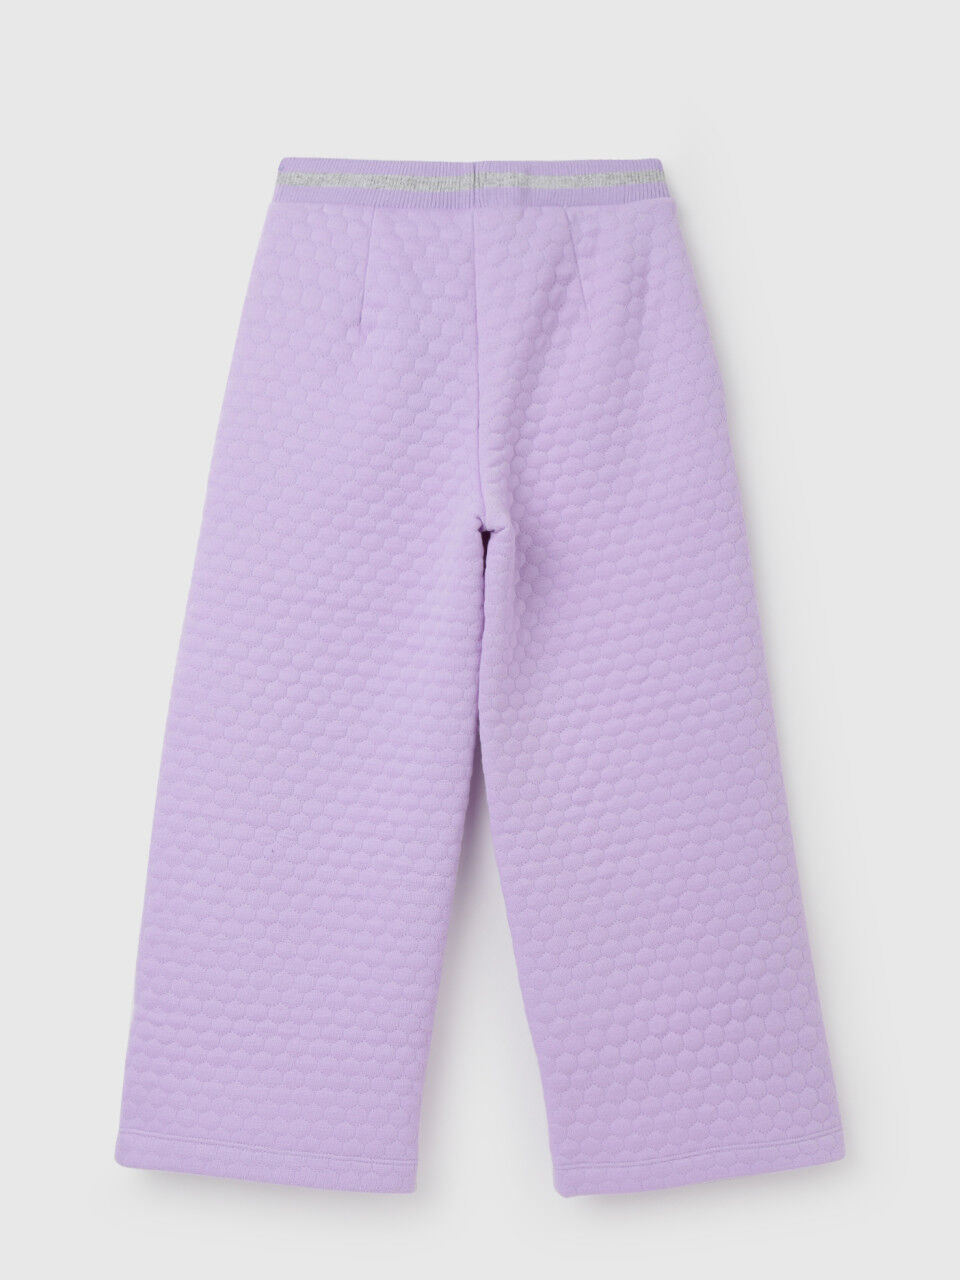 Top bustier, pattern №203 order online | Trousers pattern, Pattern,  Overlock machine